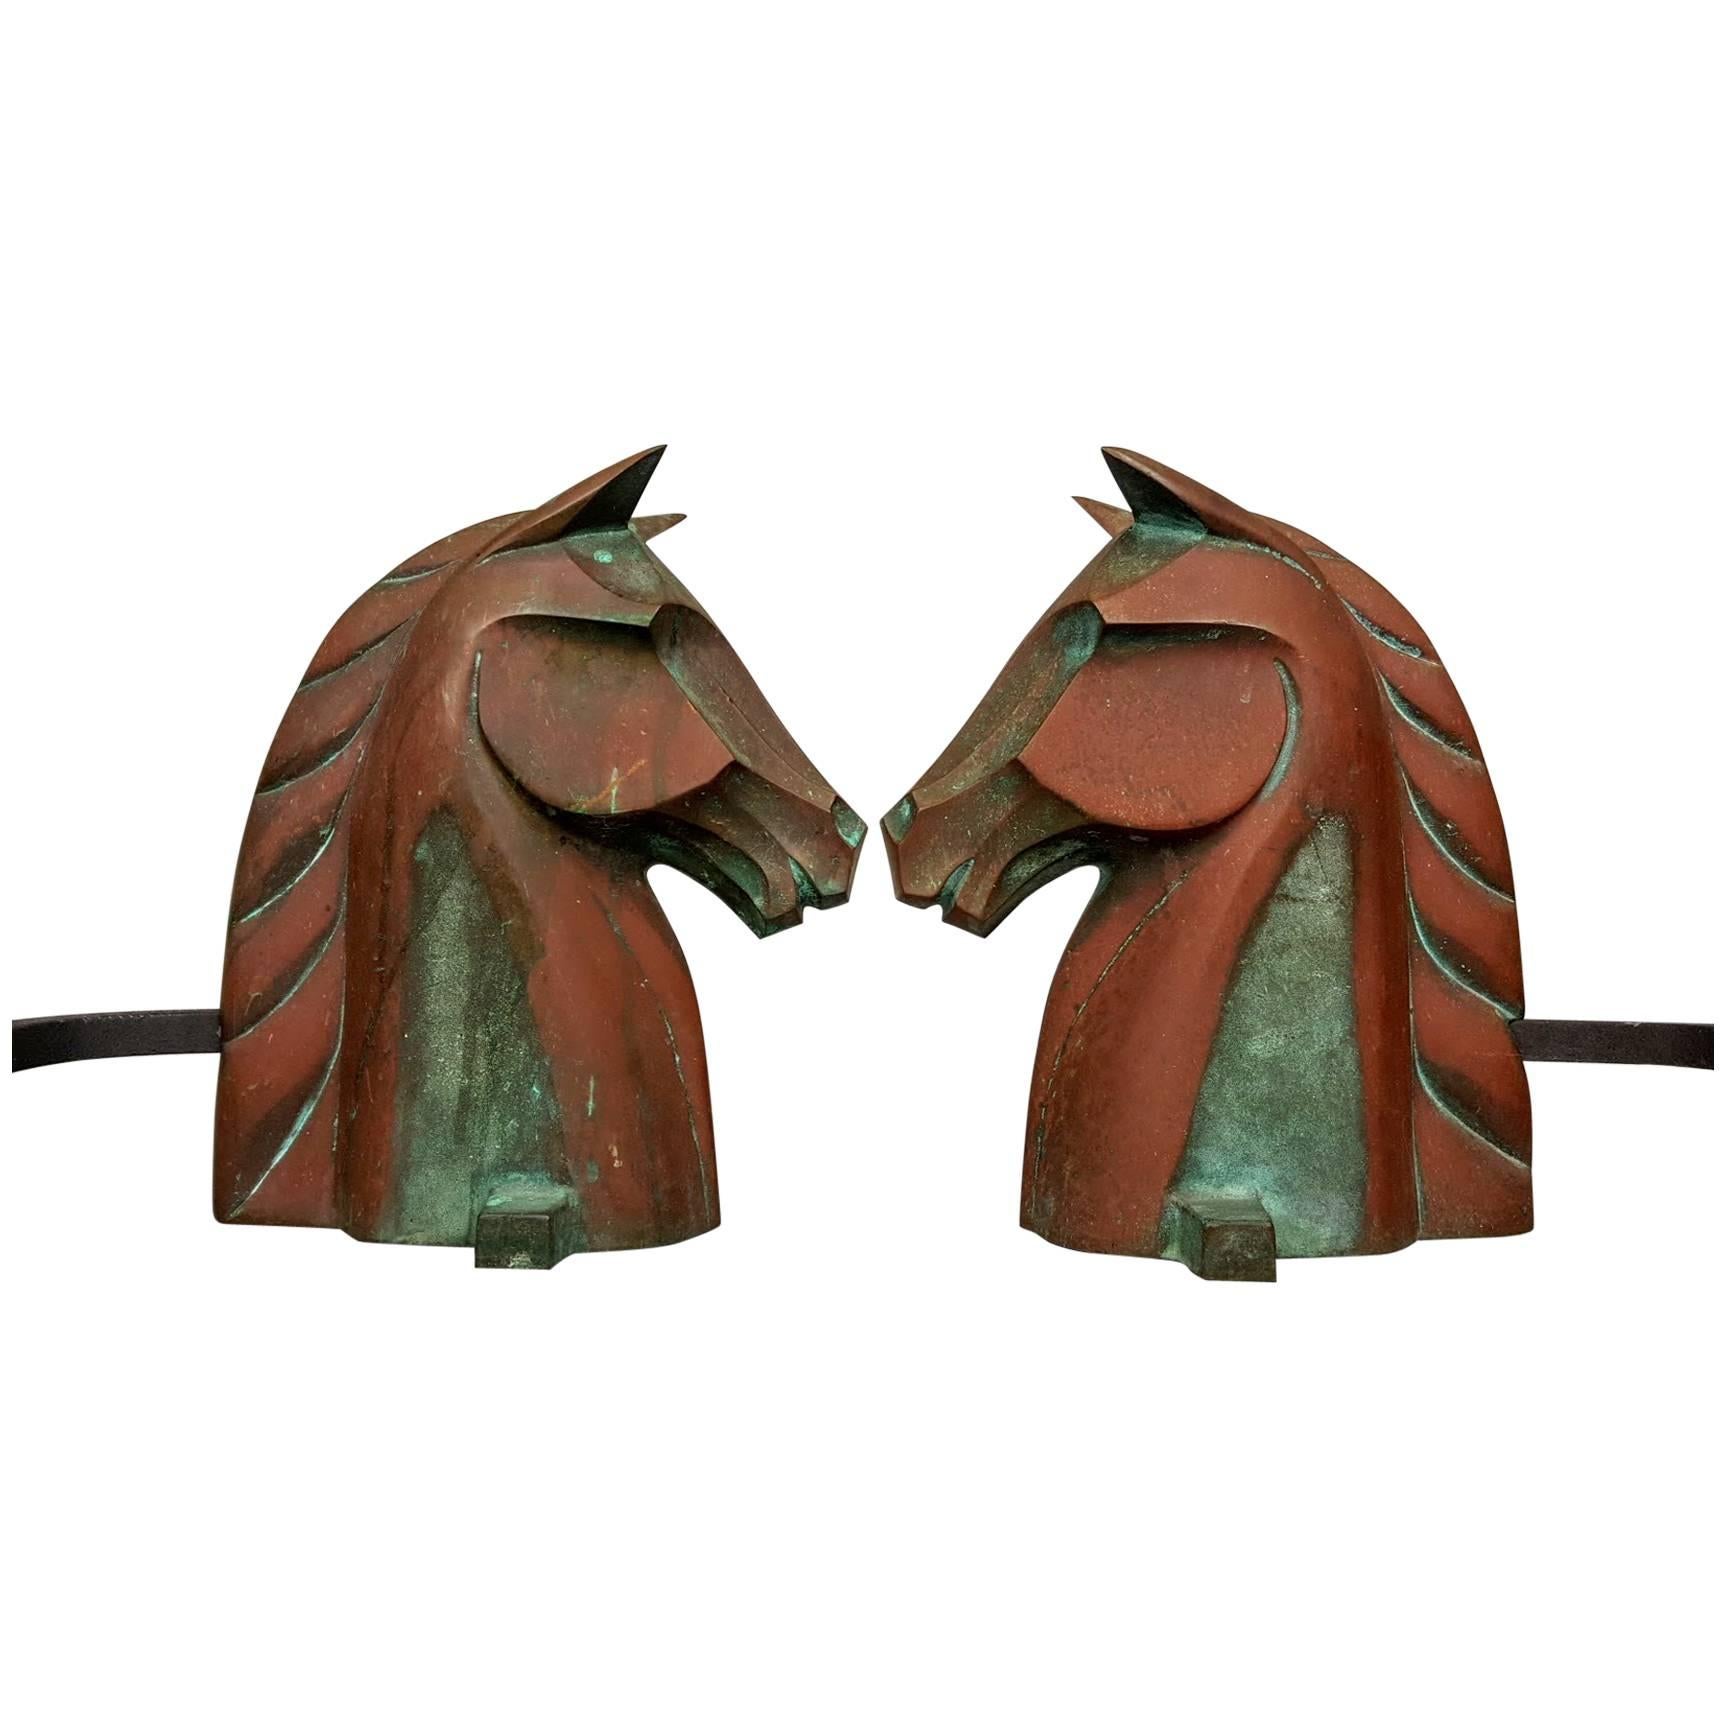 Equestrian Horse Head Andirons in Cast Bronze by Reynolds Jones